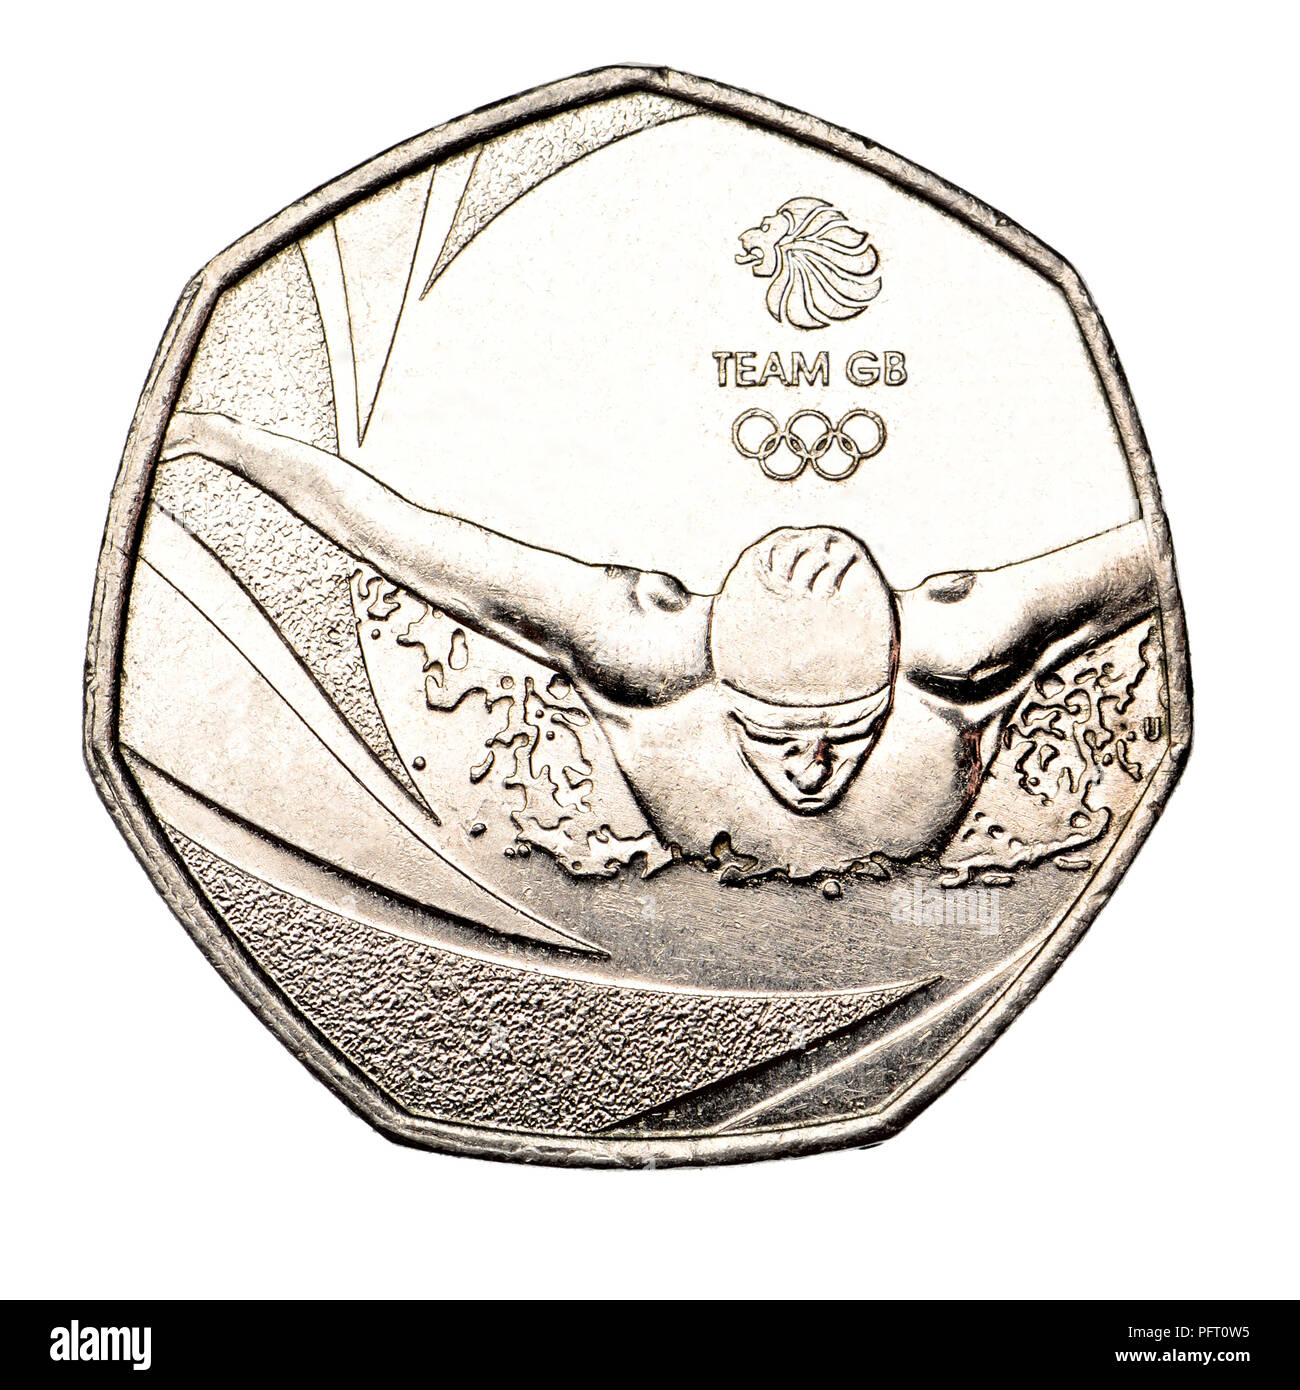 La pièce commémorative 50p (2016 : Tim Sharp), l'équipe Go Jeux Olympiques 2016 Banque D'Images